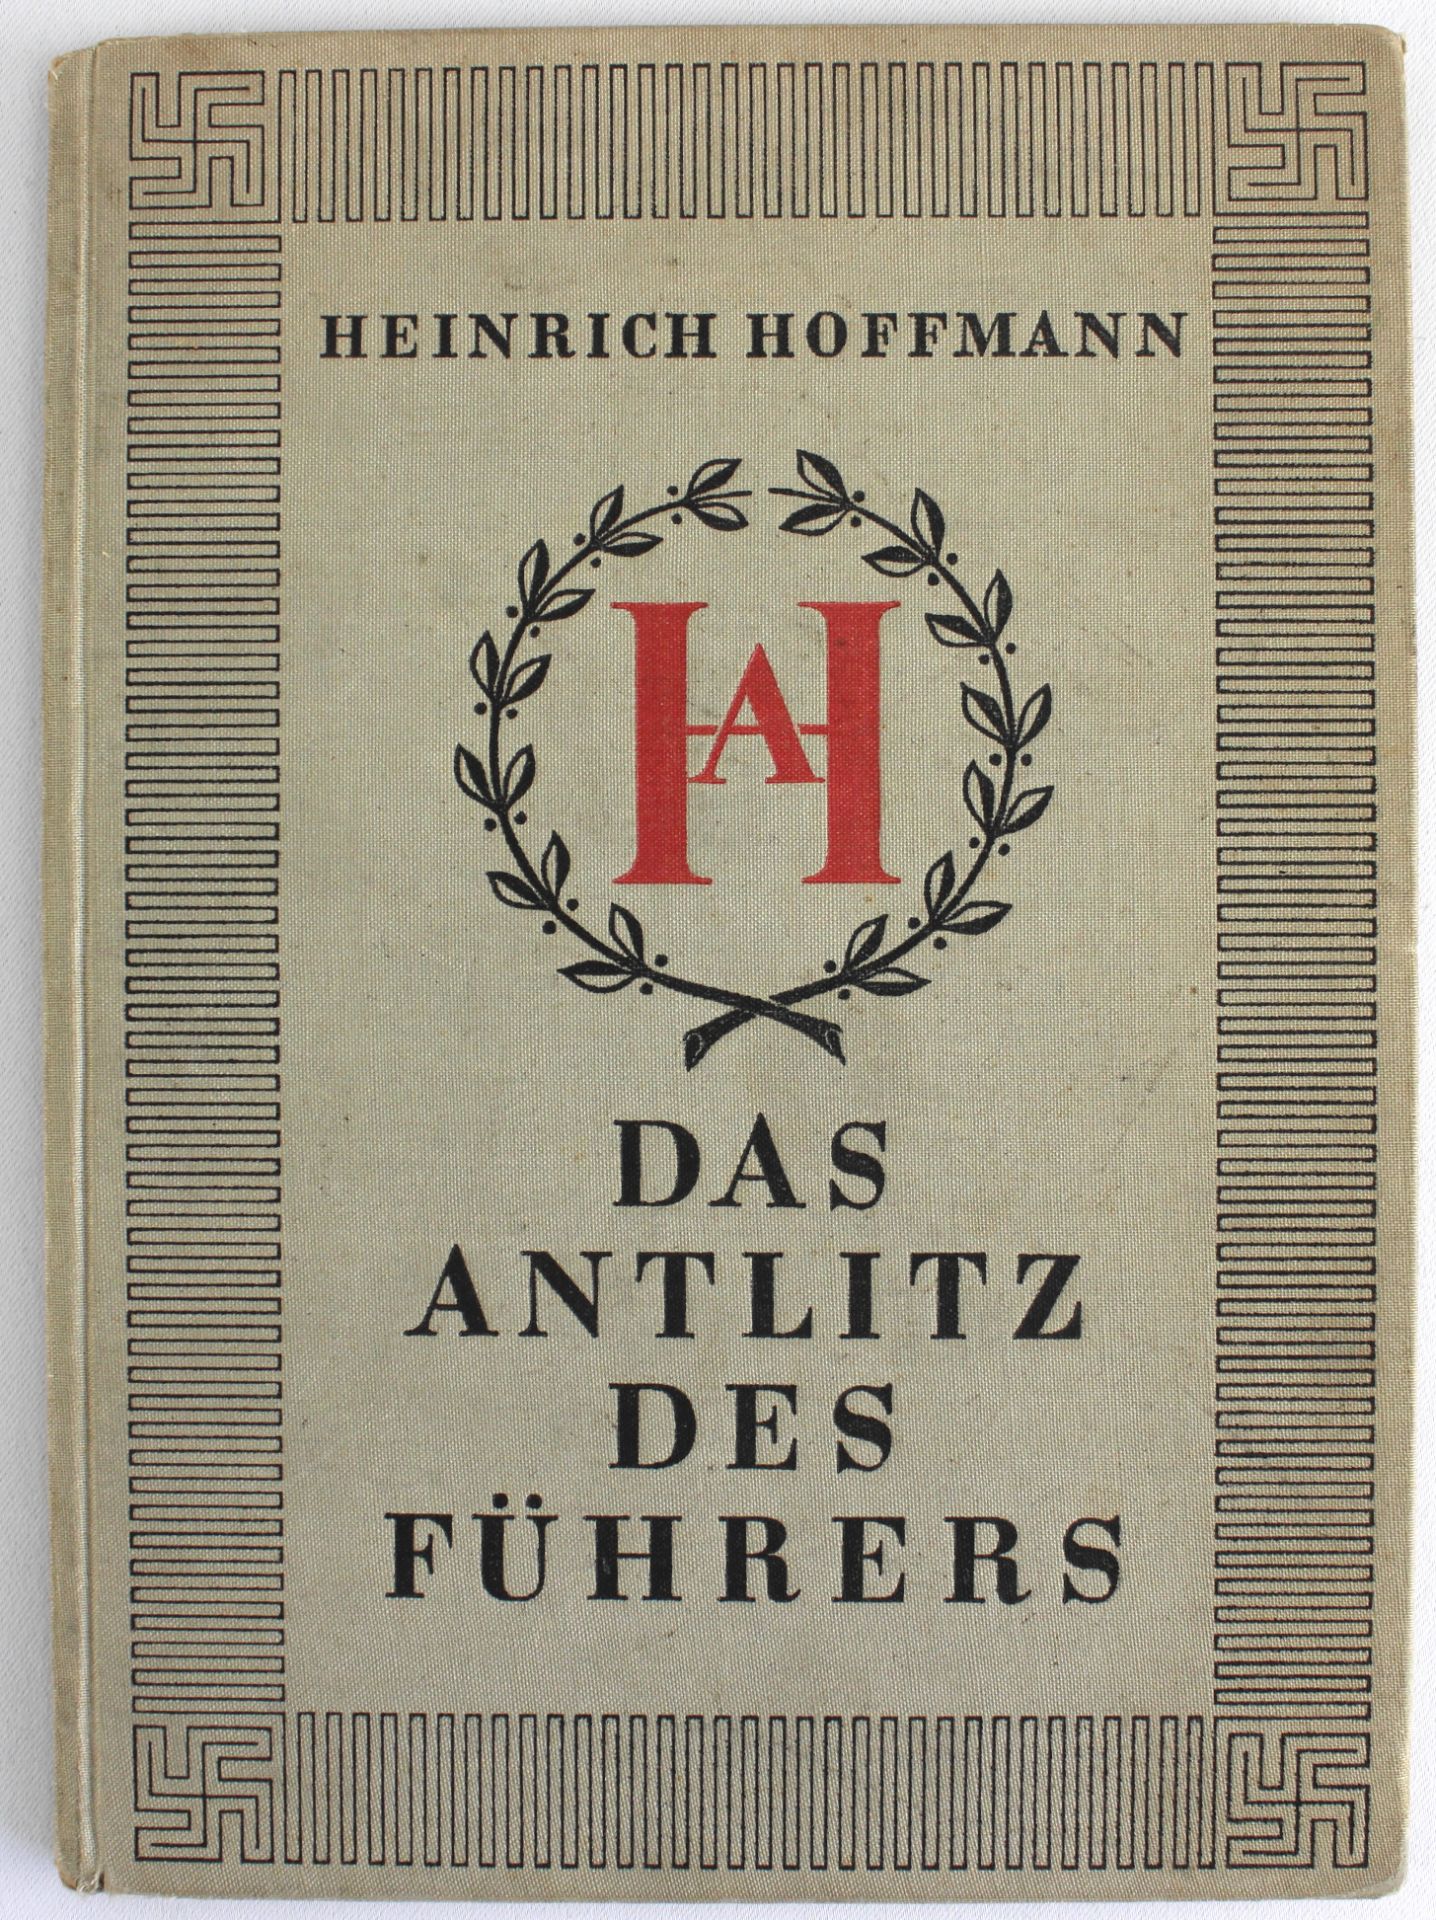 Bildband "Das Antlitz des Führers" Heinrich Hoffmann, Zeitgeschichte-Verlag, Berlin 1939